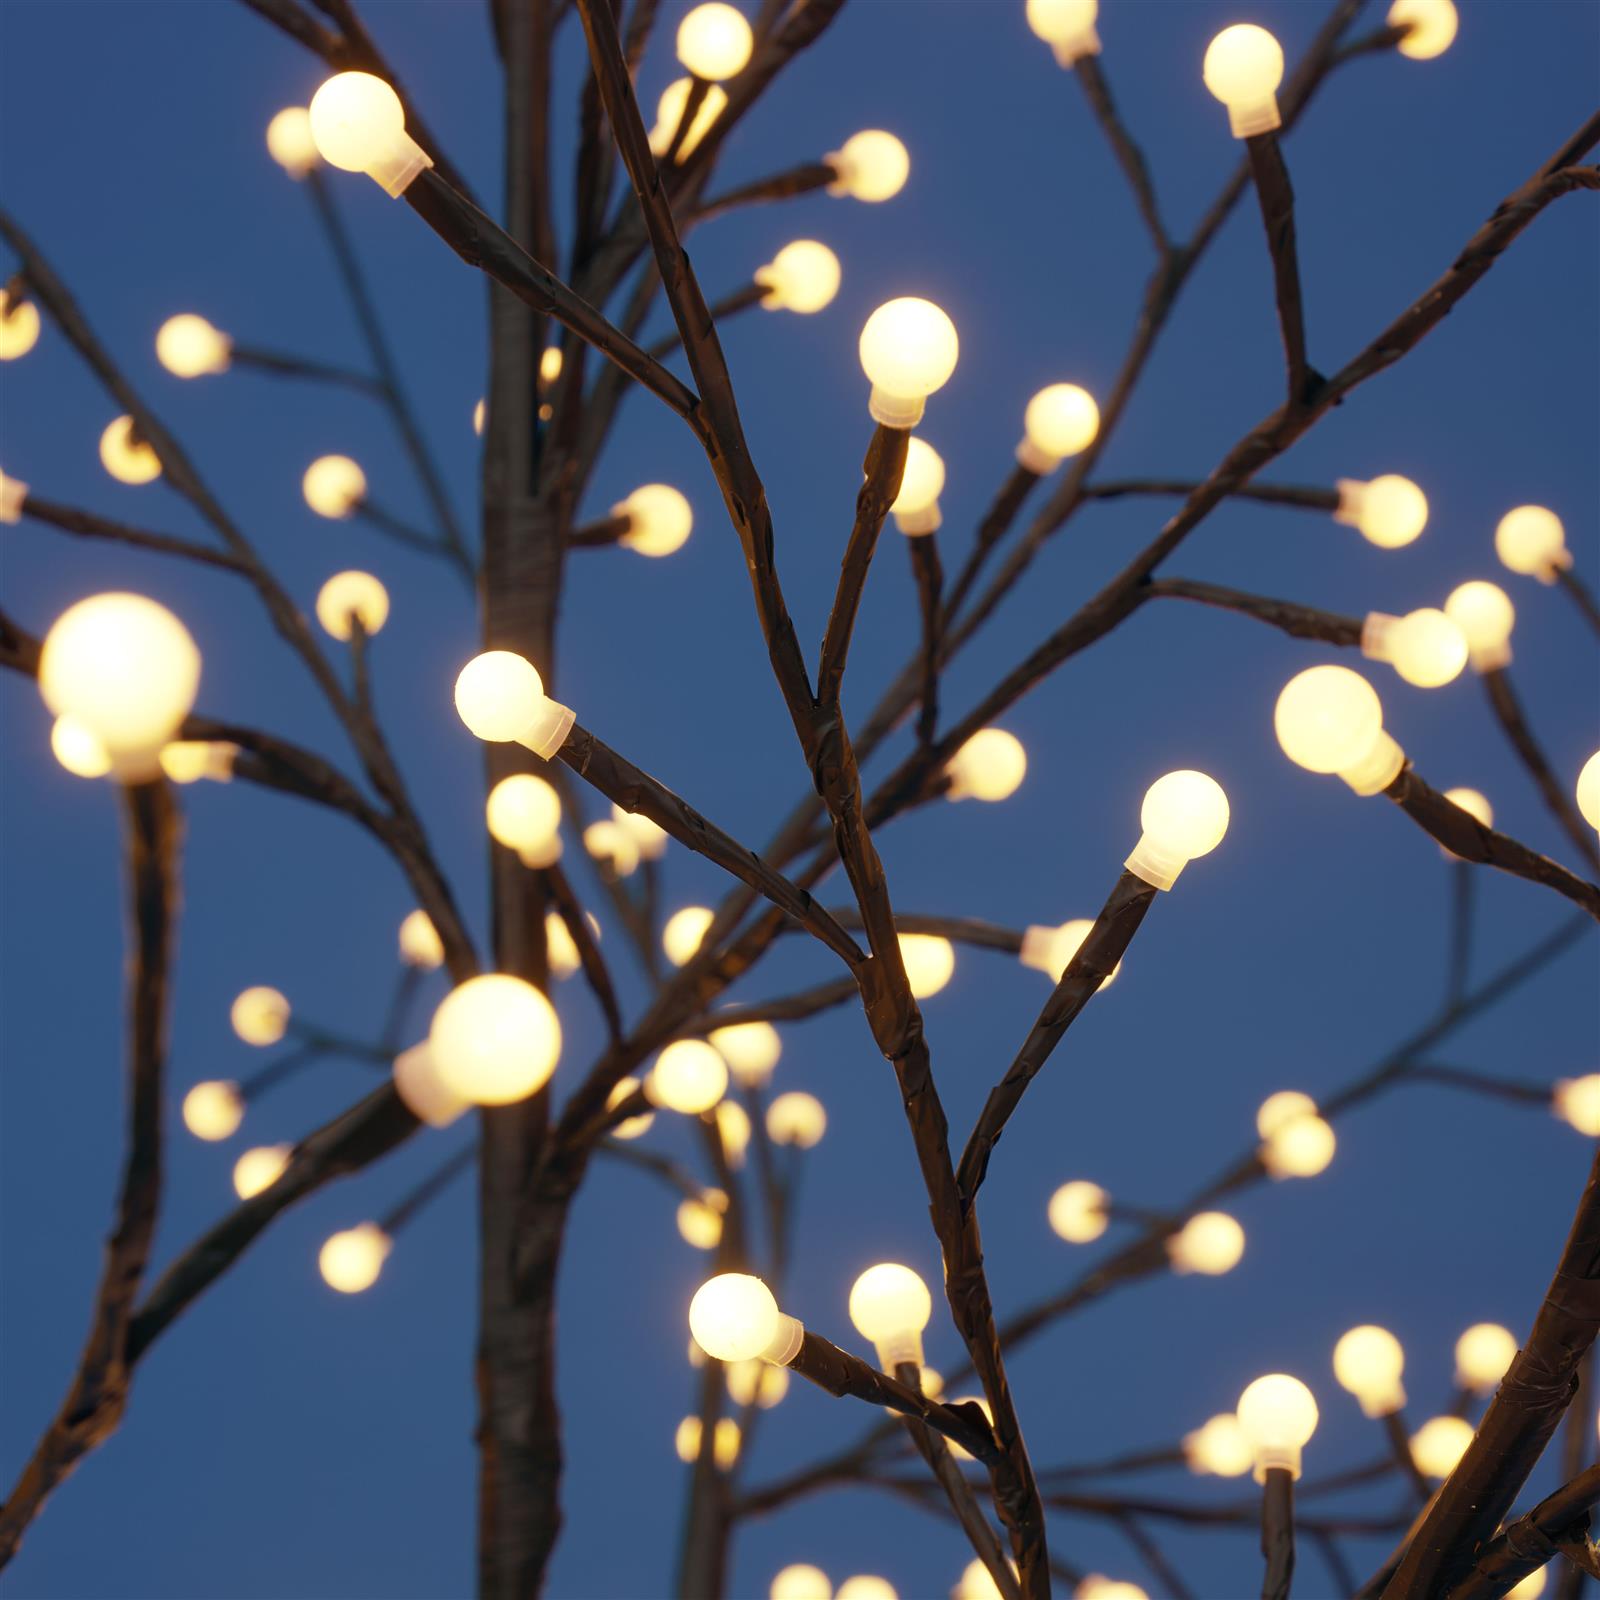 LED Lichterbaum, mit flexiblen Ästen, warmweiß beleuchtet (500 LED - 220 cm)